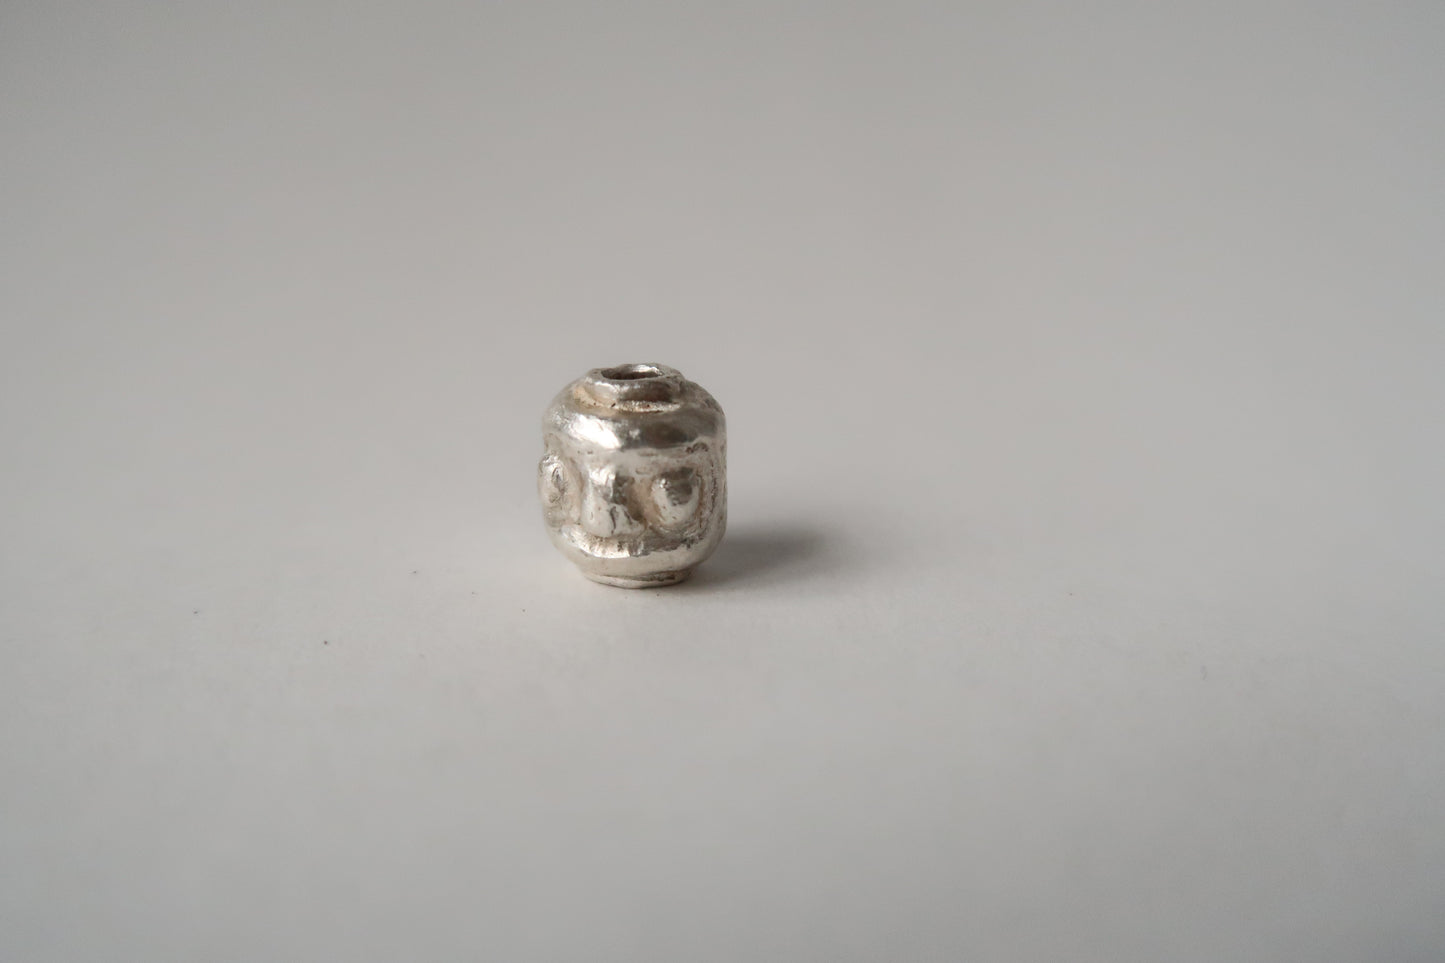 Fine Silver Lego Daruma bead charm